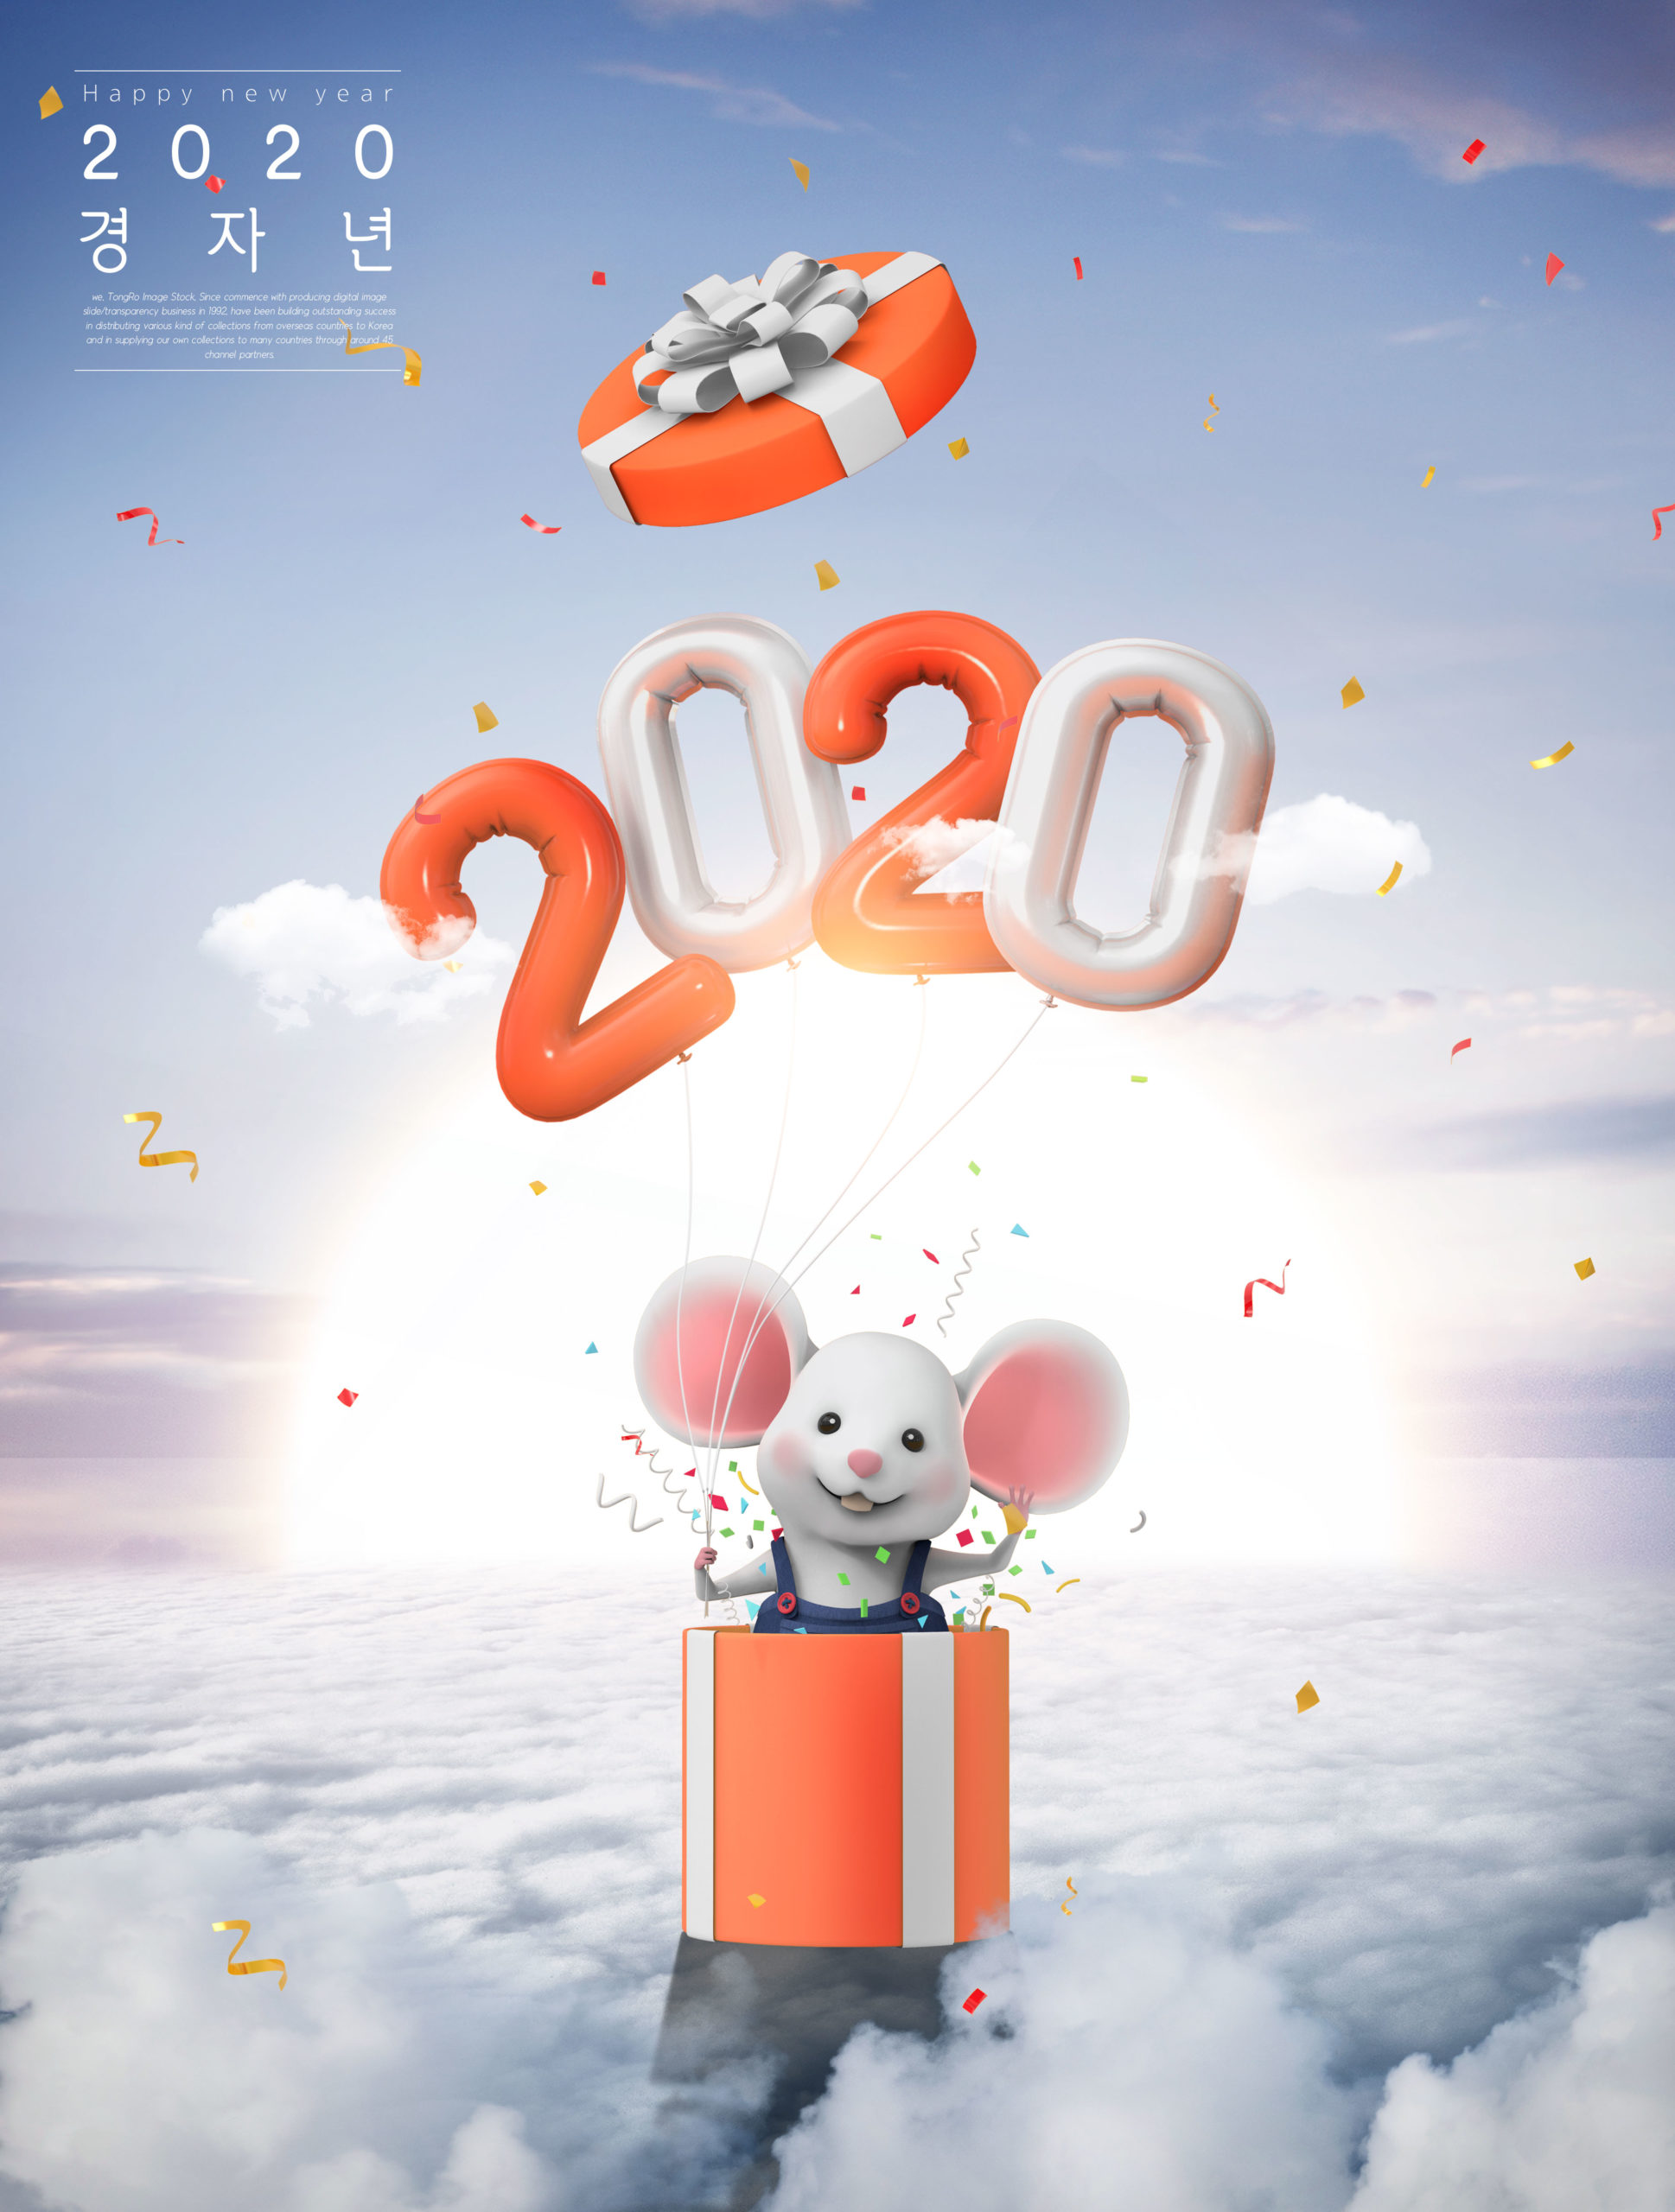 2020鼠年祝福主题云层梦幻背景海报PSD素材蚂蚁素材精选模板插图